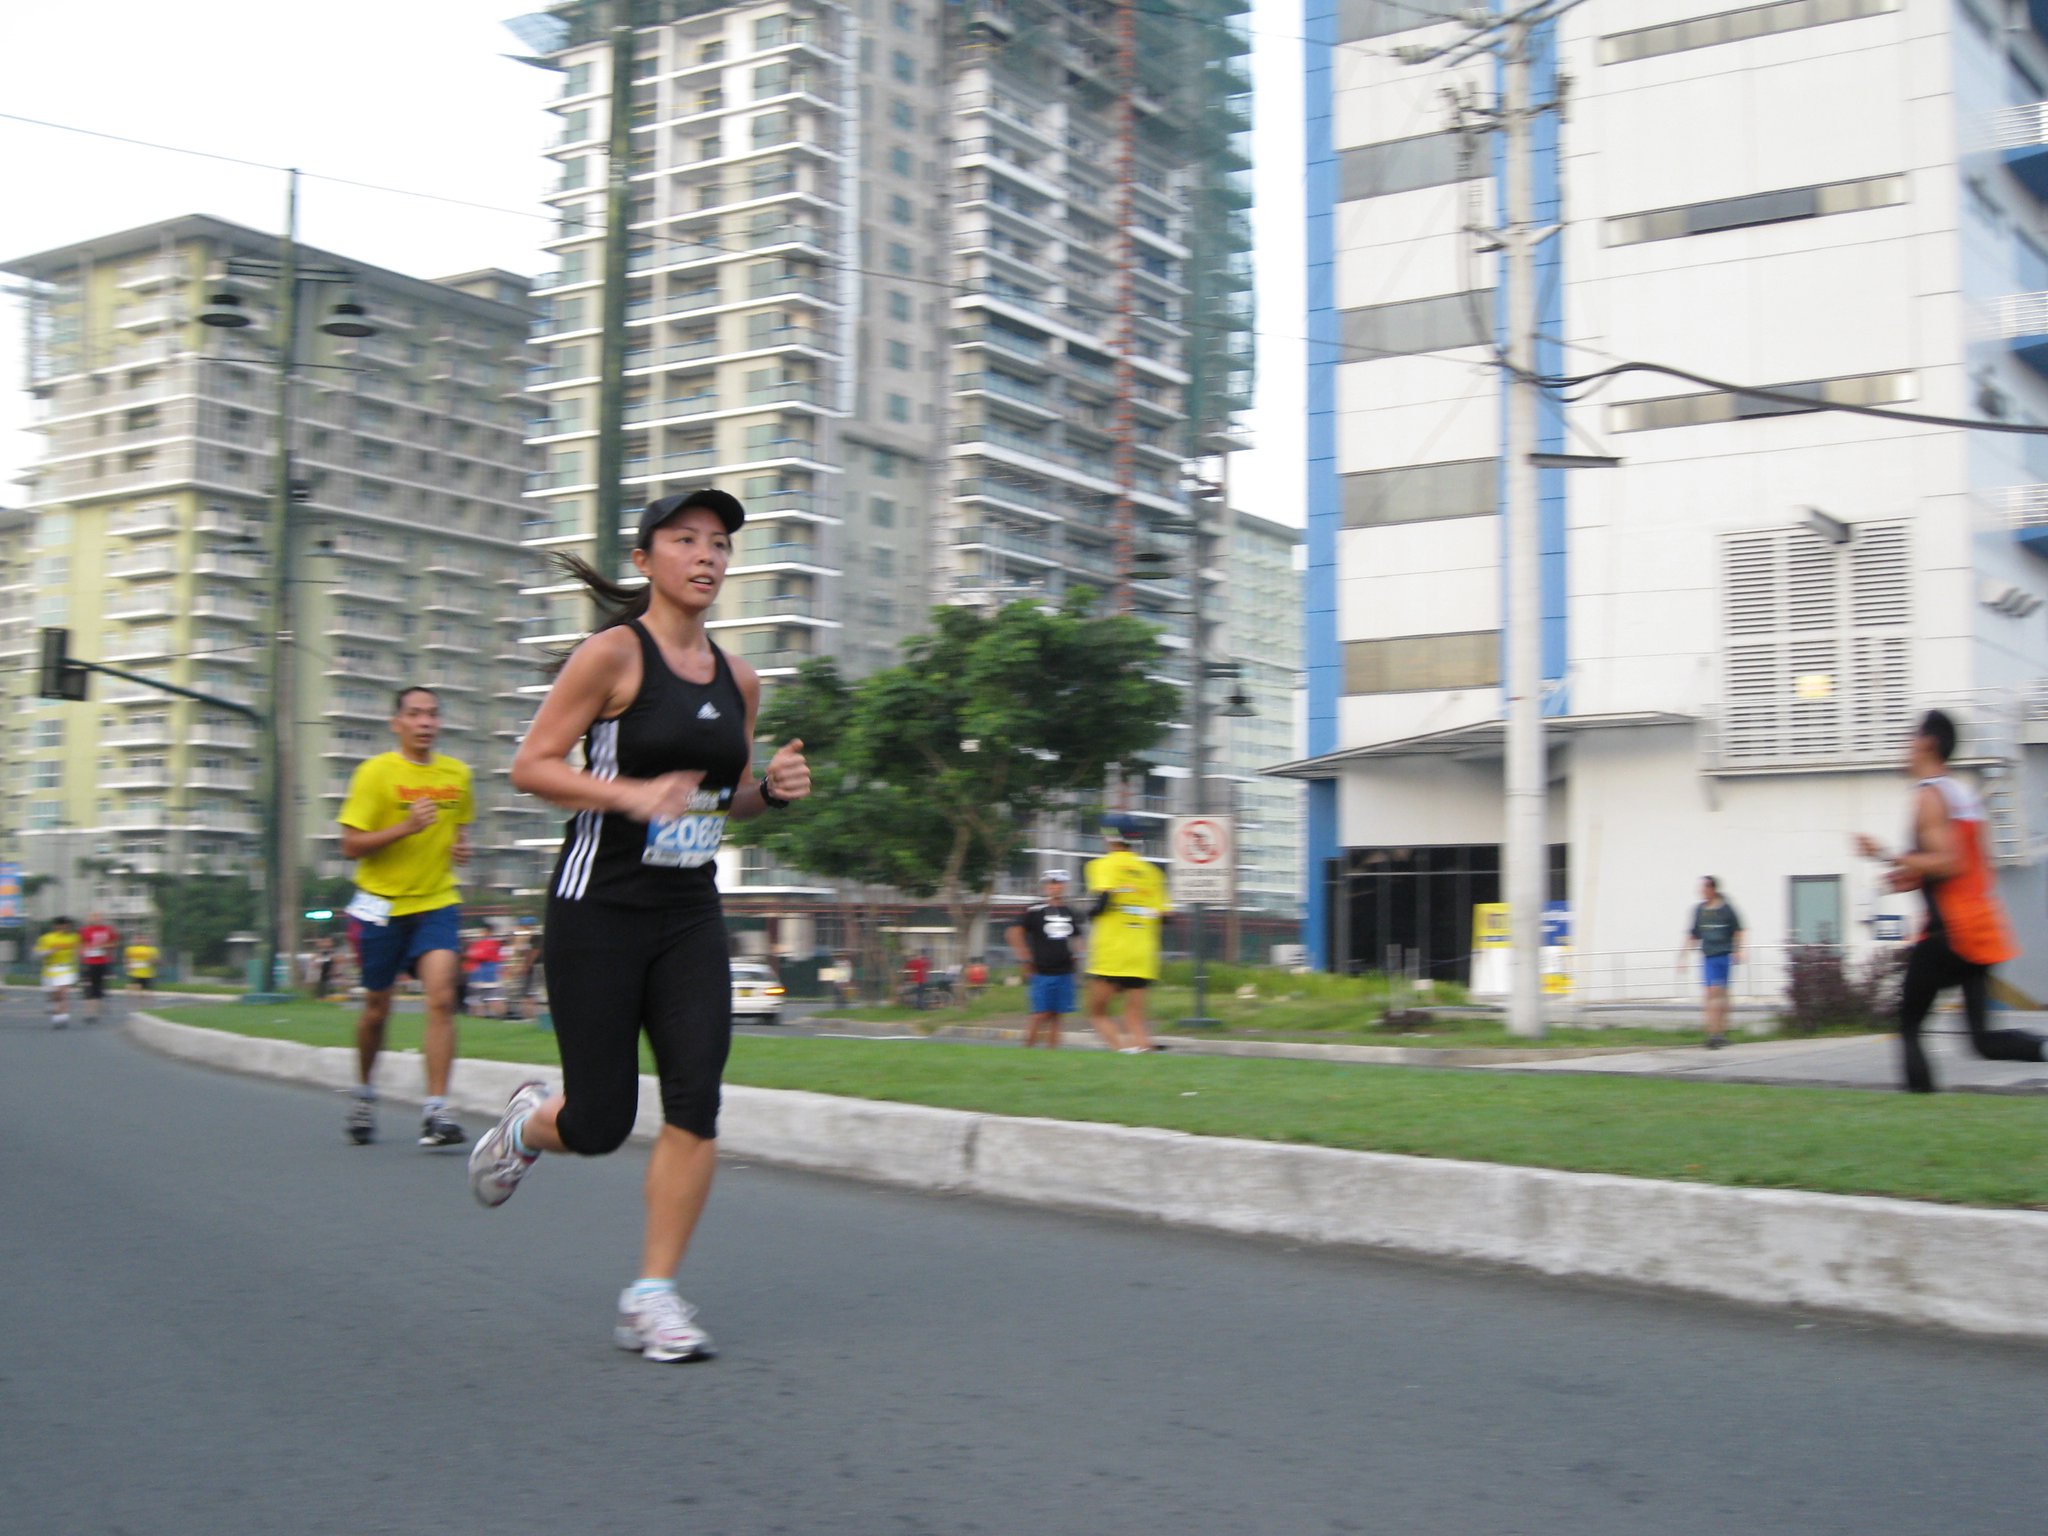 Men's Health Urbanathlon: Running For It